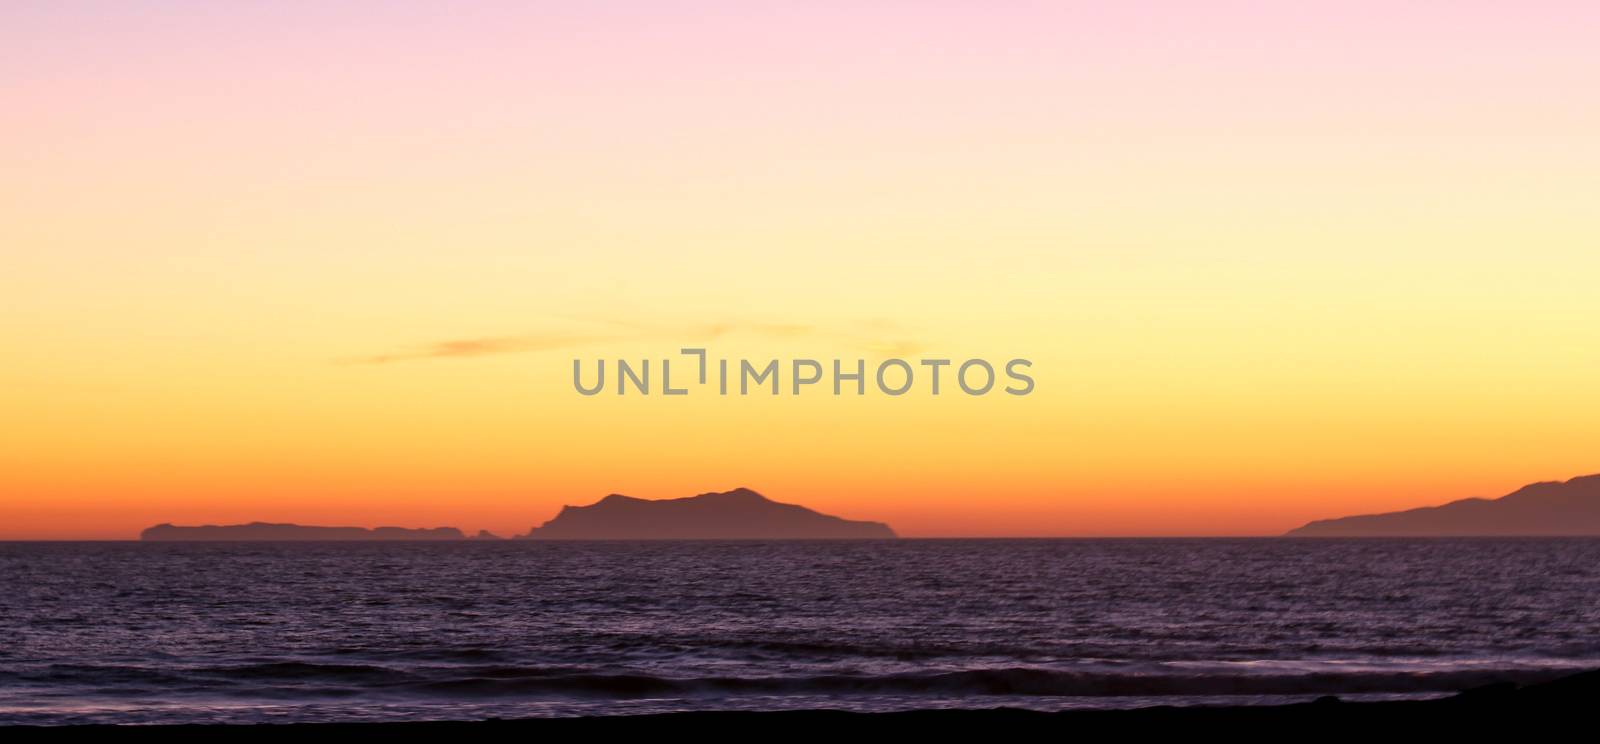 Anacapa Sunset by hlehnerer